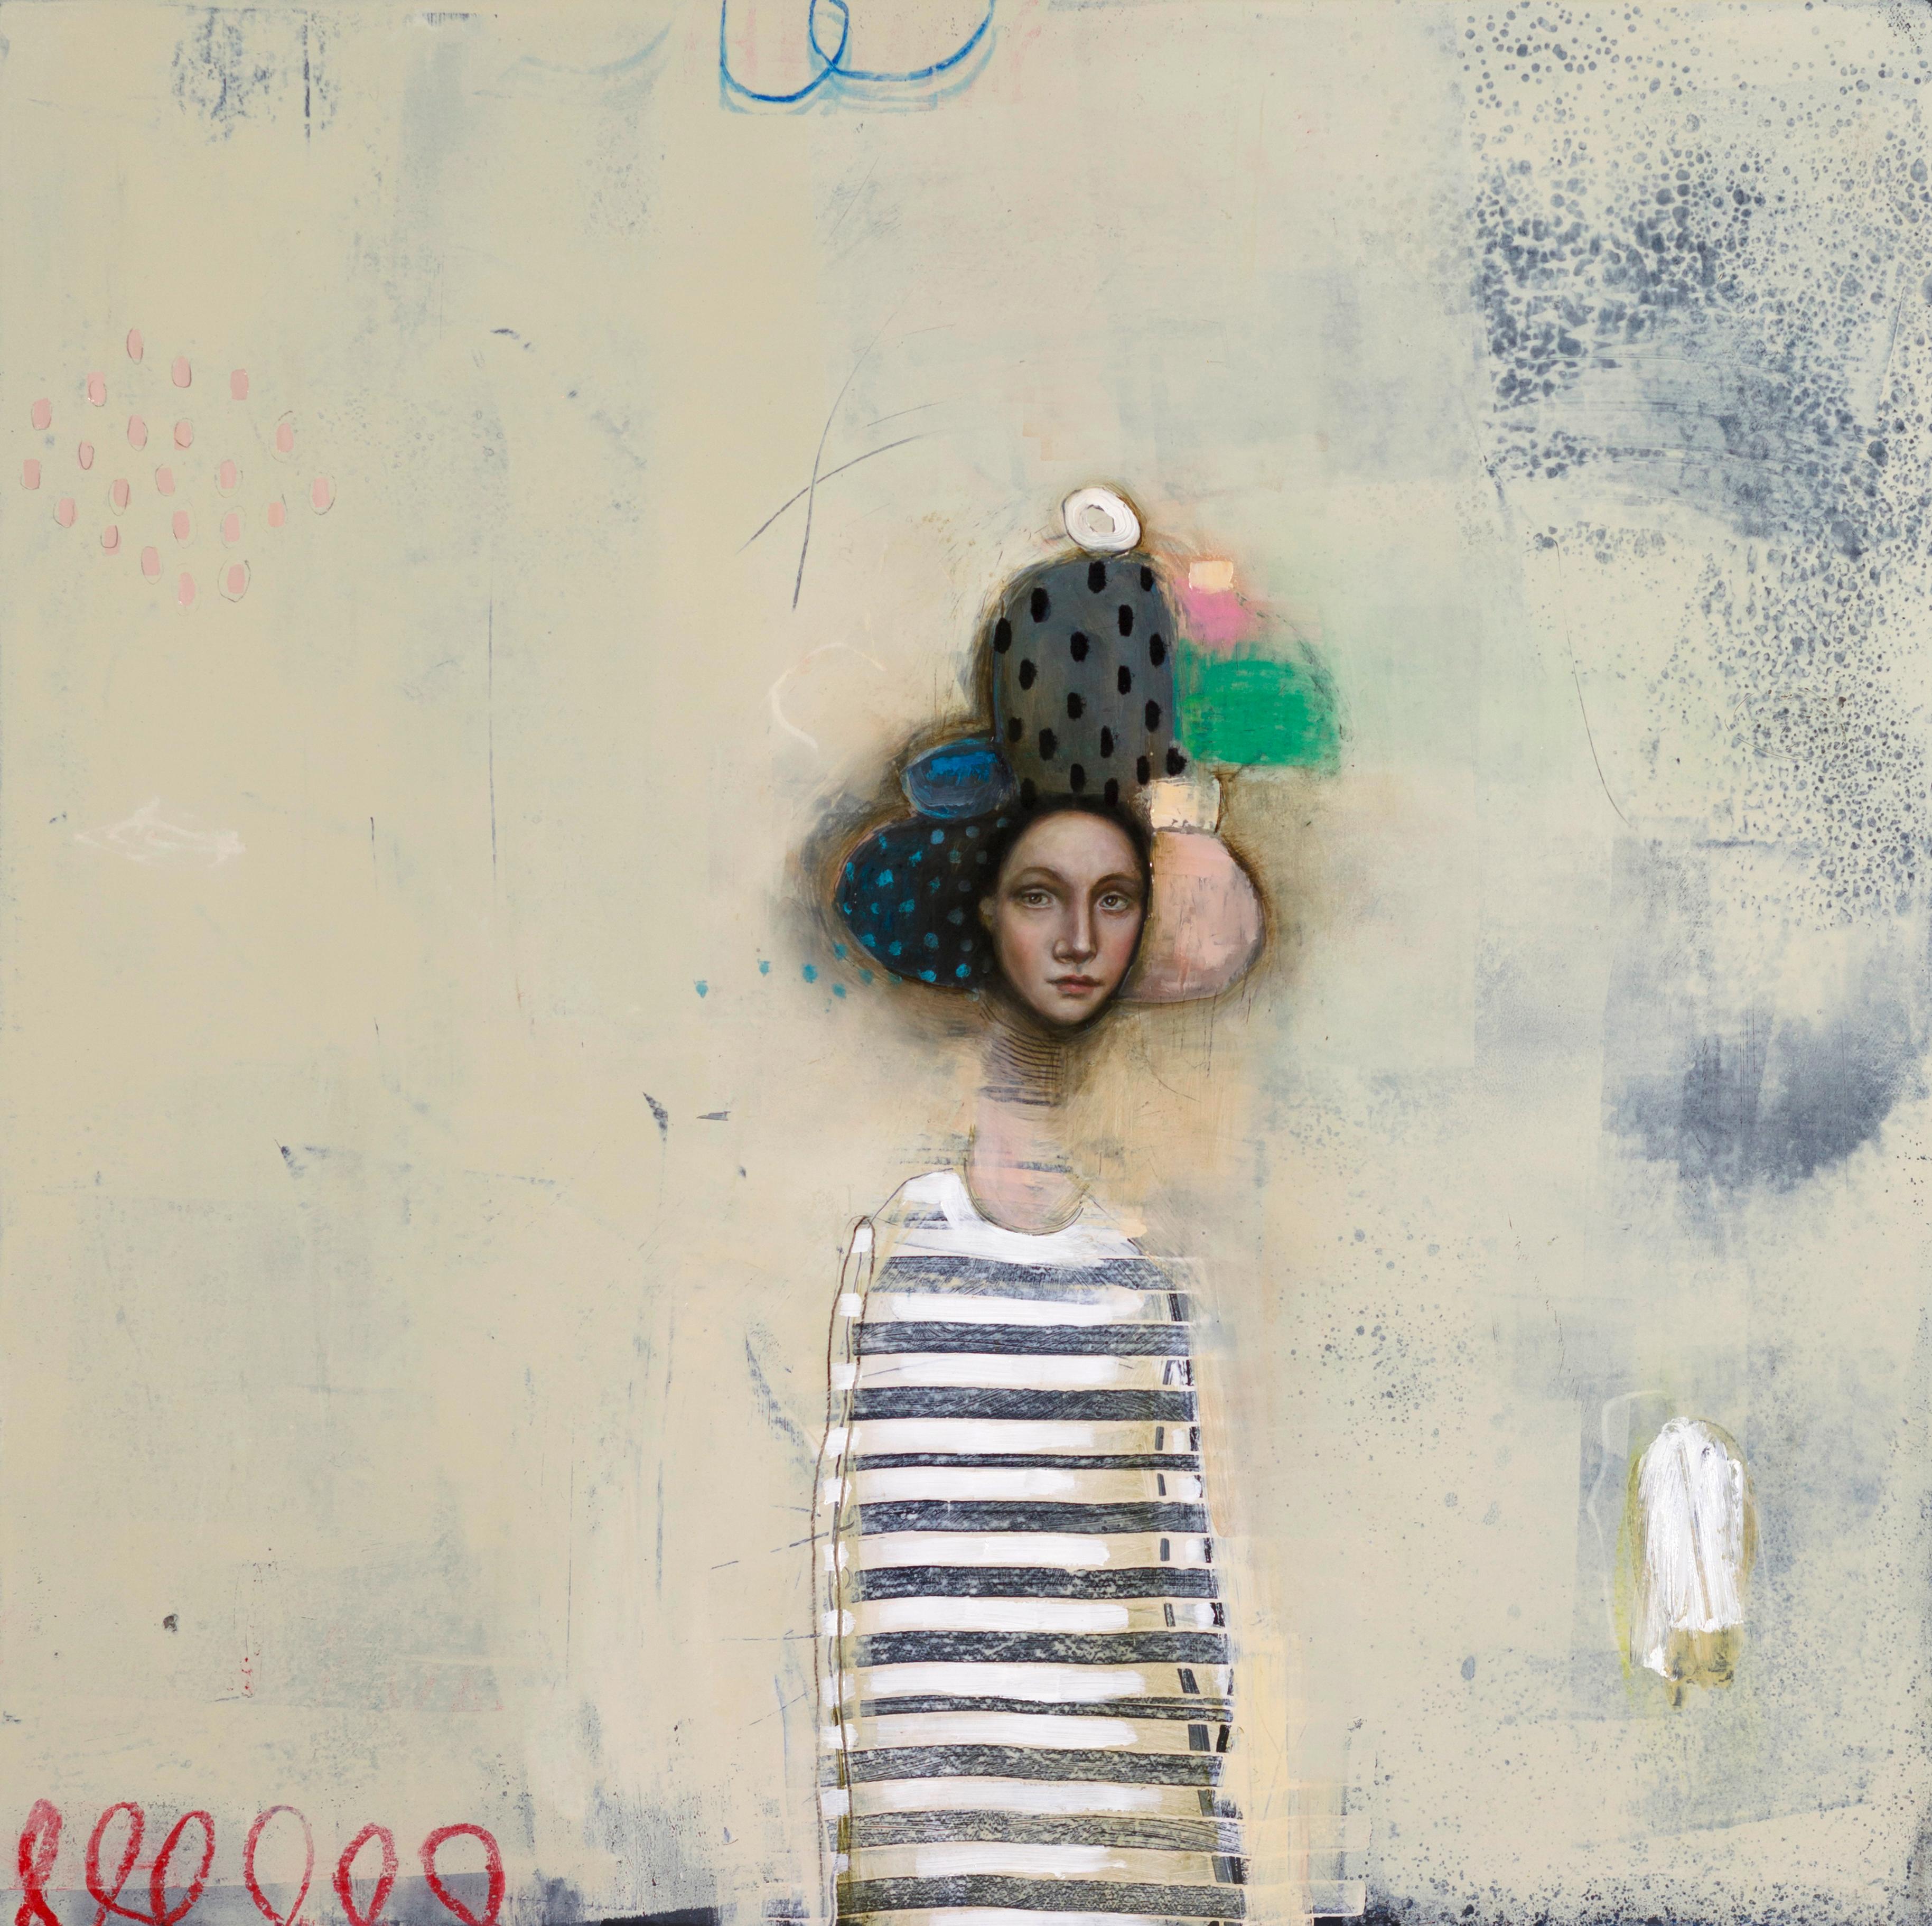 Michele Mikesell Portrait Painting - Juno, Oil on canvas, figurative pop art portrait master, pastel color palette